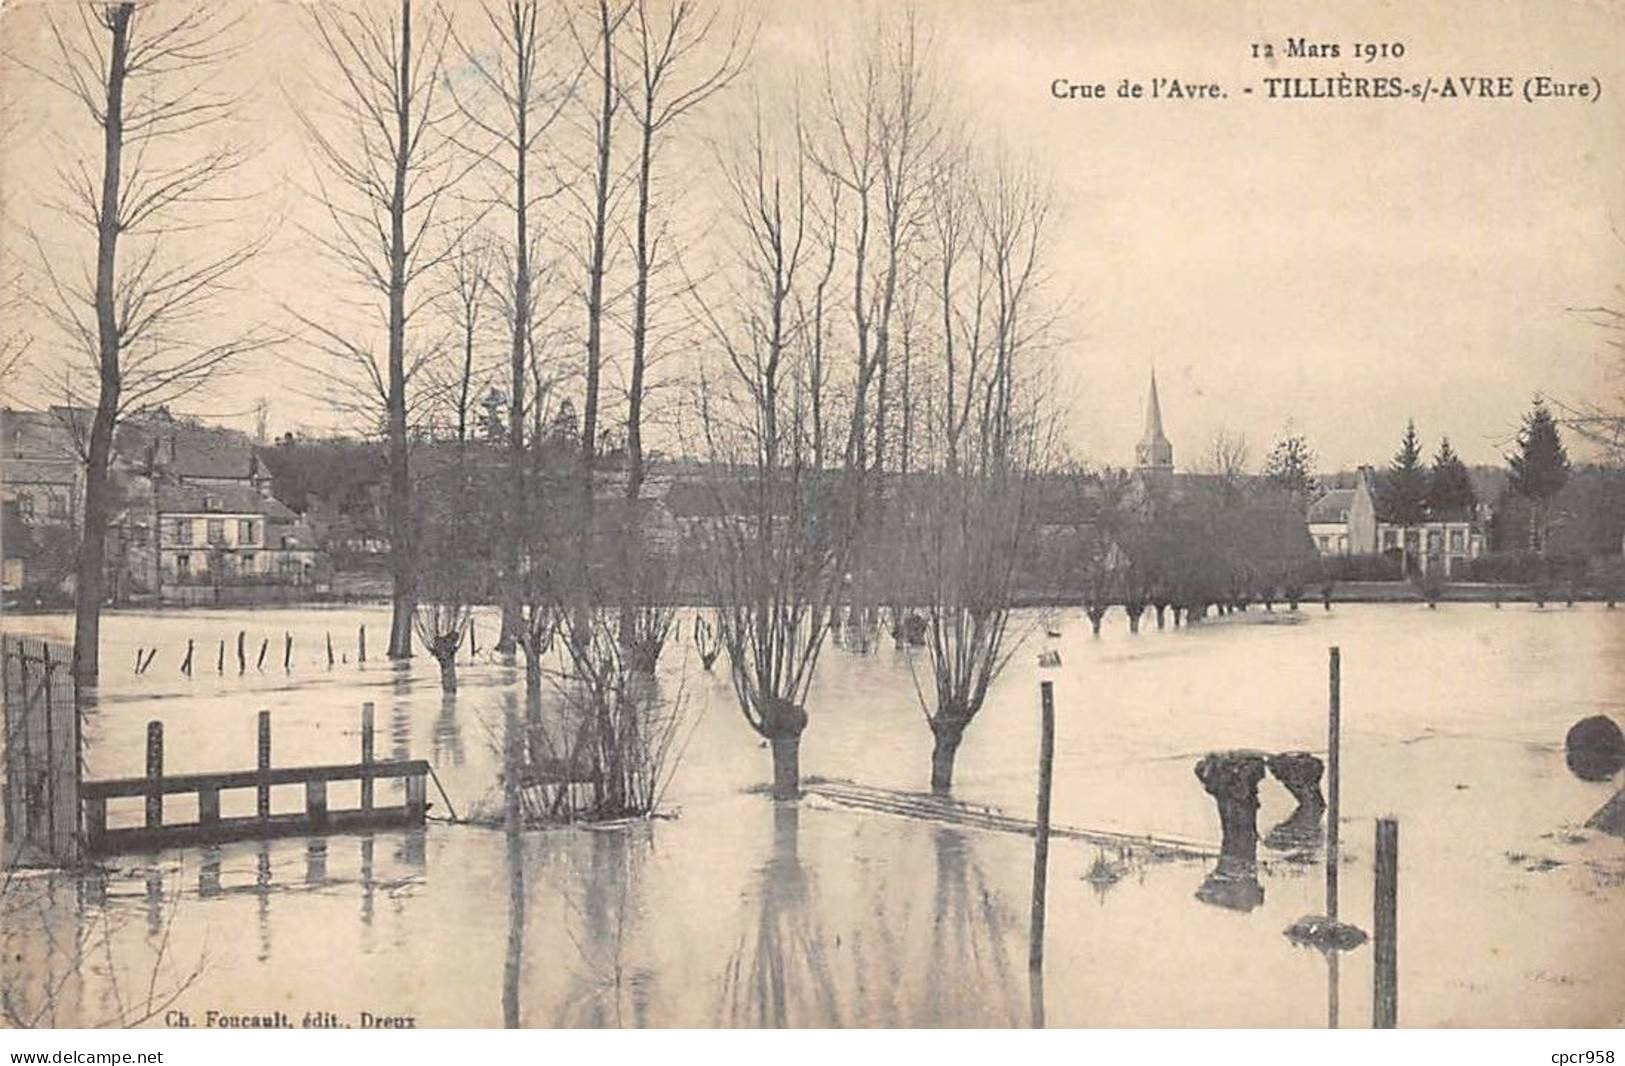 27 - TILLIERES S/AVRE - SAN54246 - Crue De L'Avre - 12 Mars 1910 - Tillières-sur-Avre